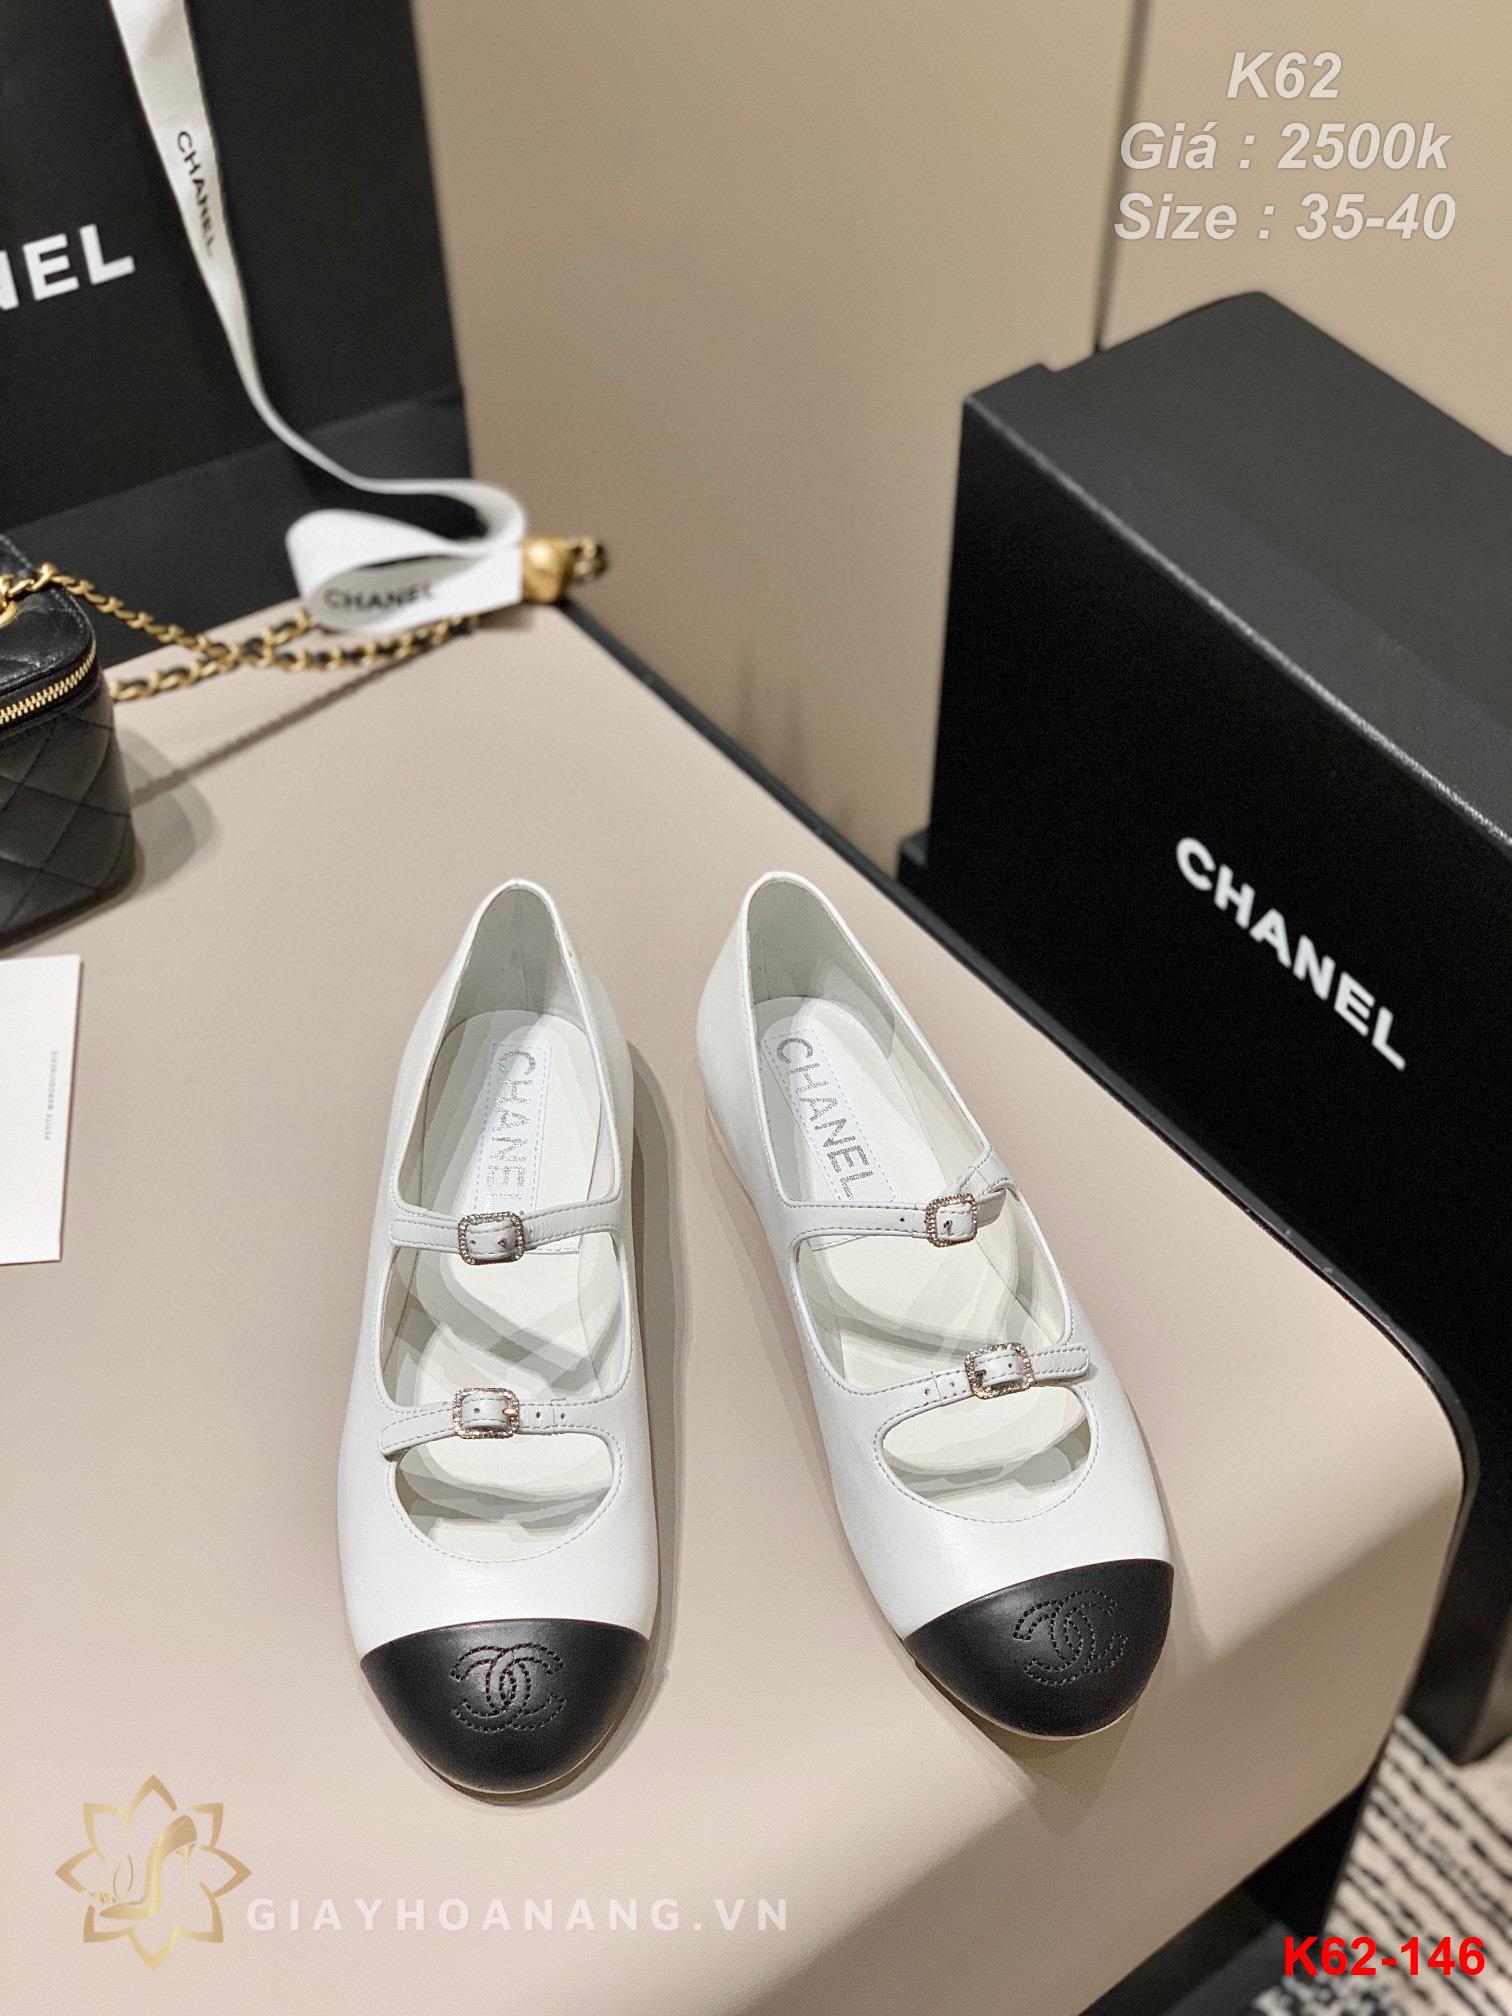 K62-146 Chanel giày bệt siêu cấp